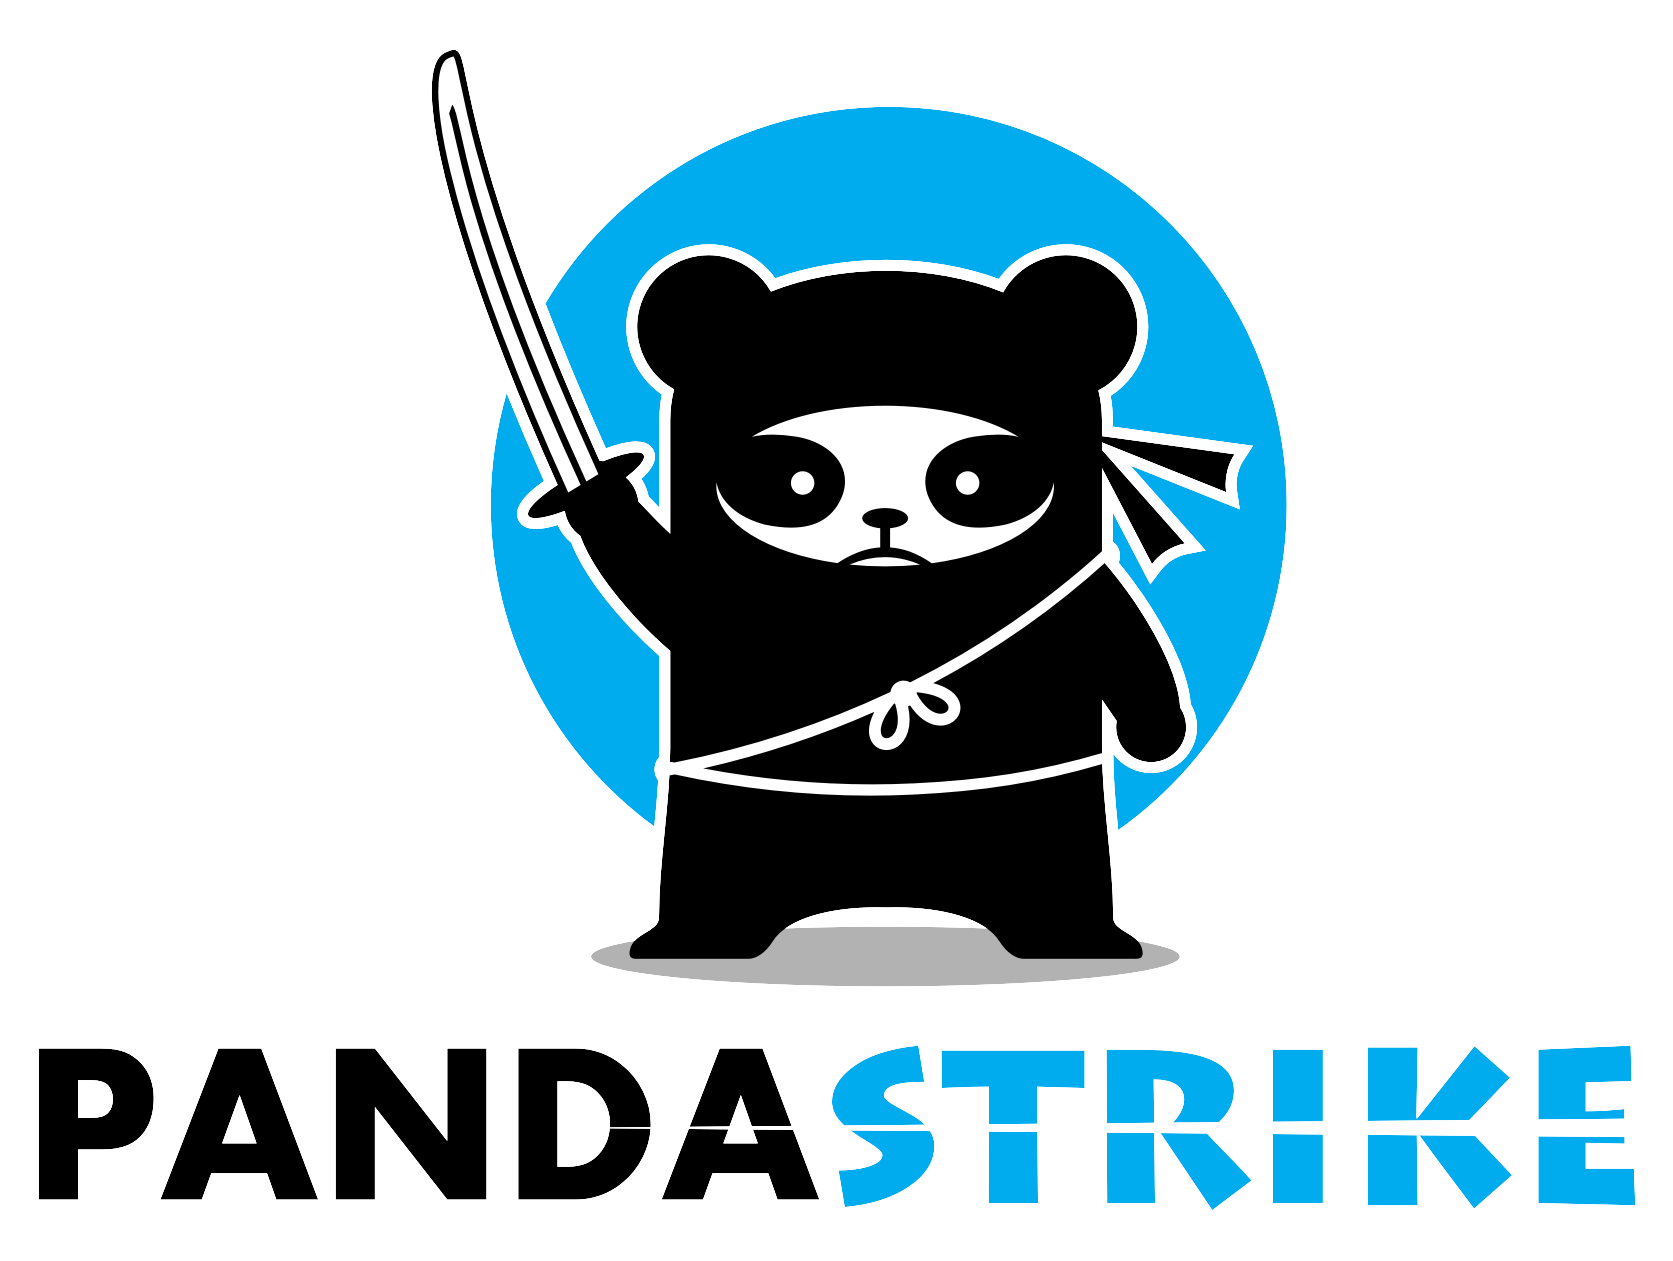 Panda Strike, Inc.